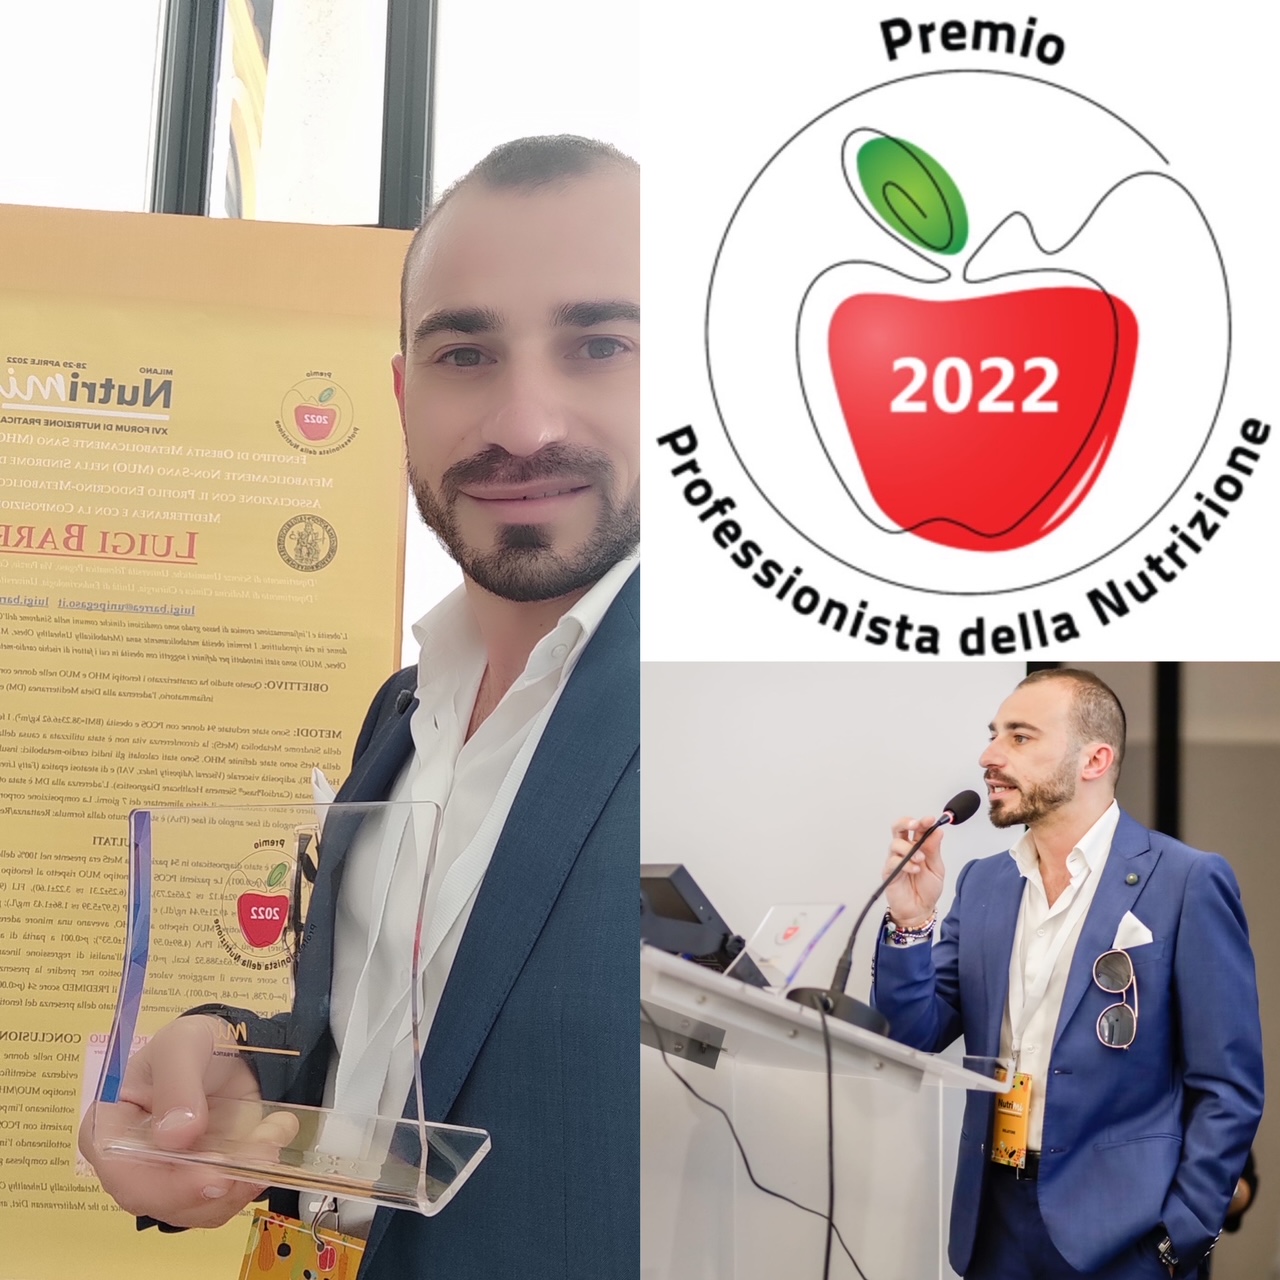 Il premio Professionista della Nutrizione 2022 è stato assegnato al torremaggiorese Luigi Barrea